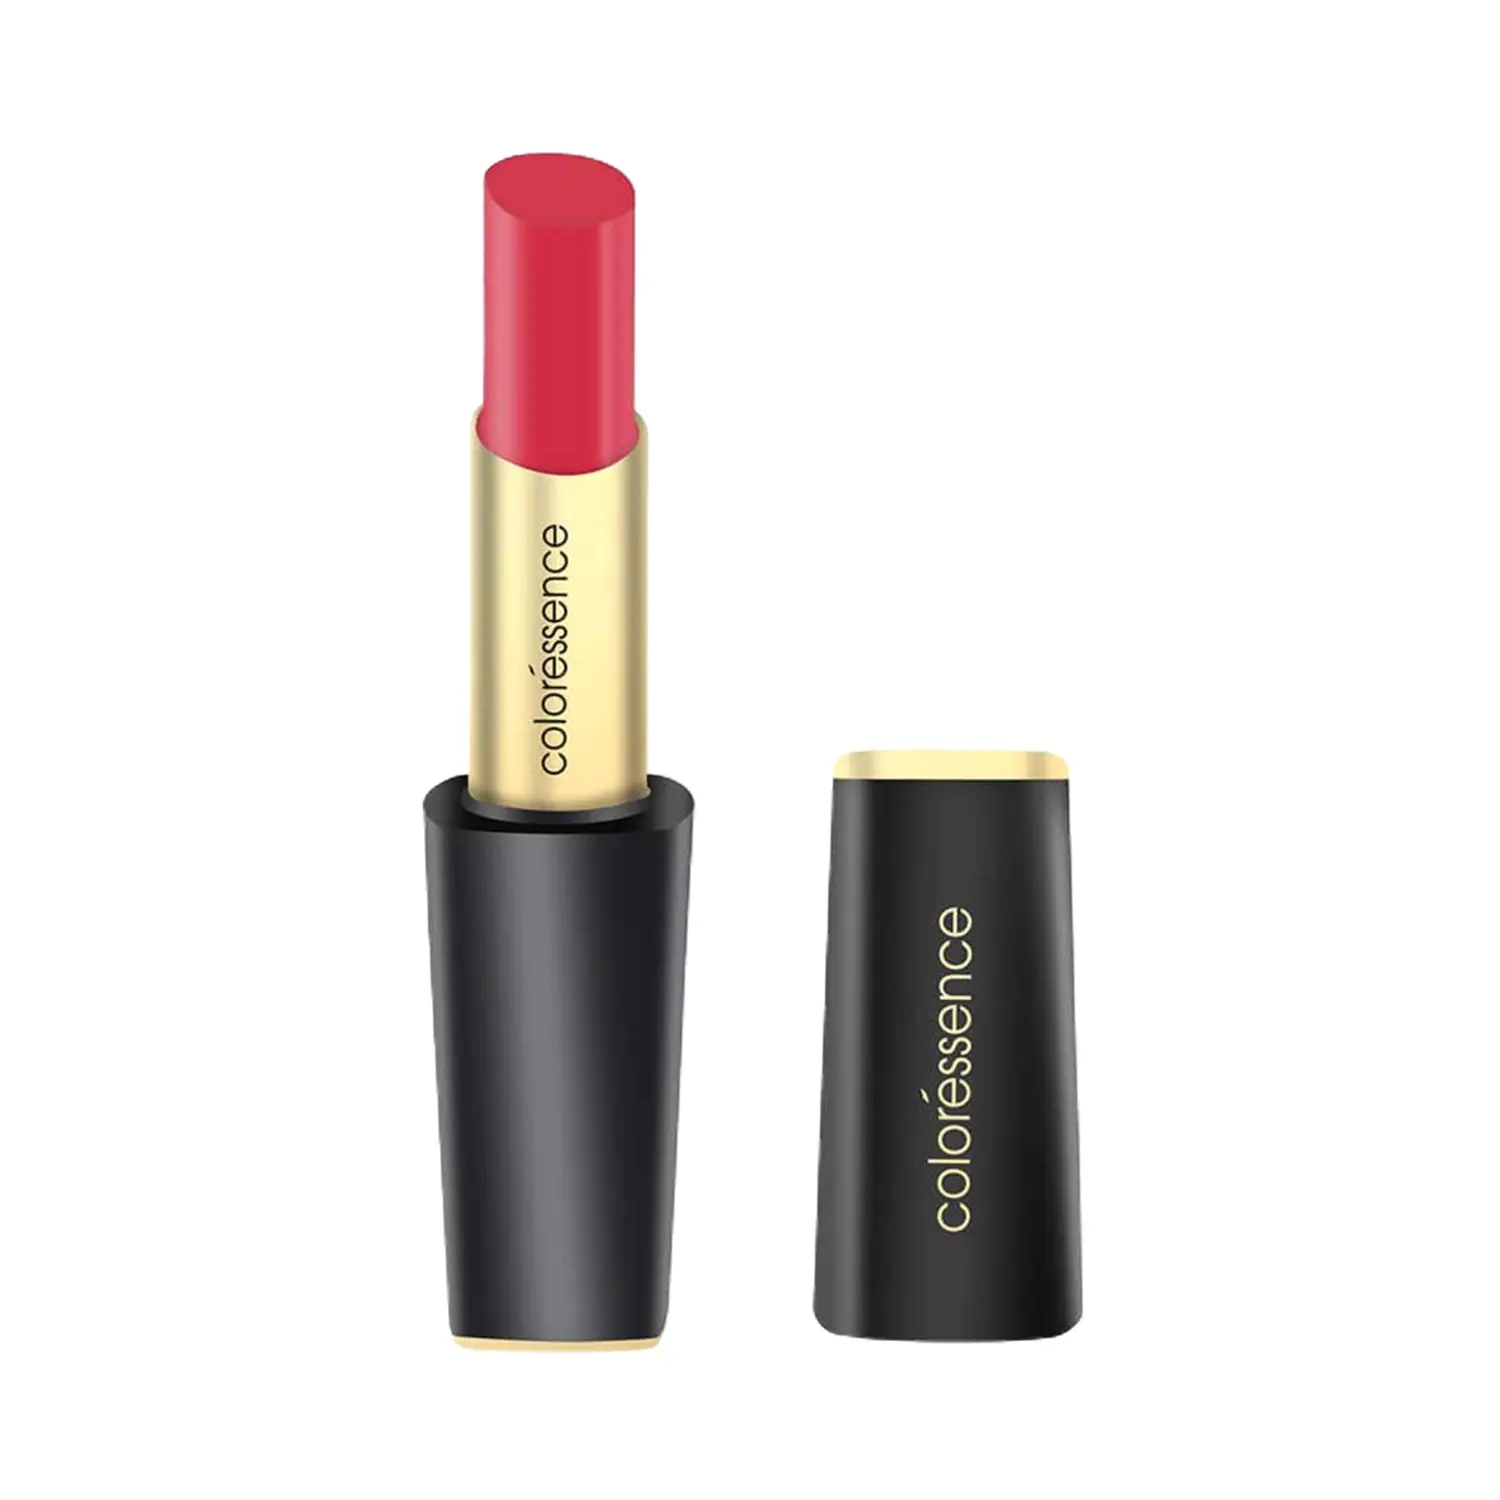 Coloressence | Coloressence Intense Long Wear Lip Color Glossy Lipstick - Ravishing (2.5g)